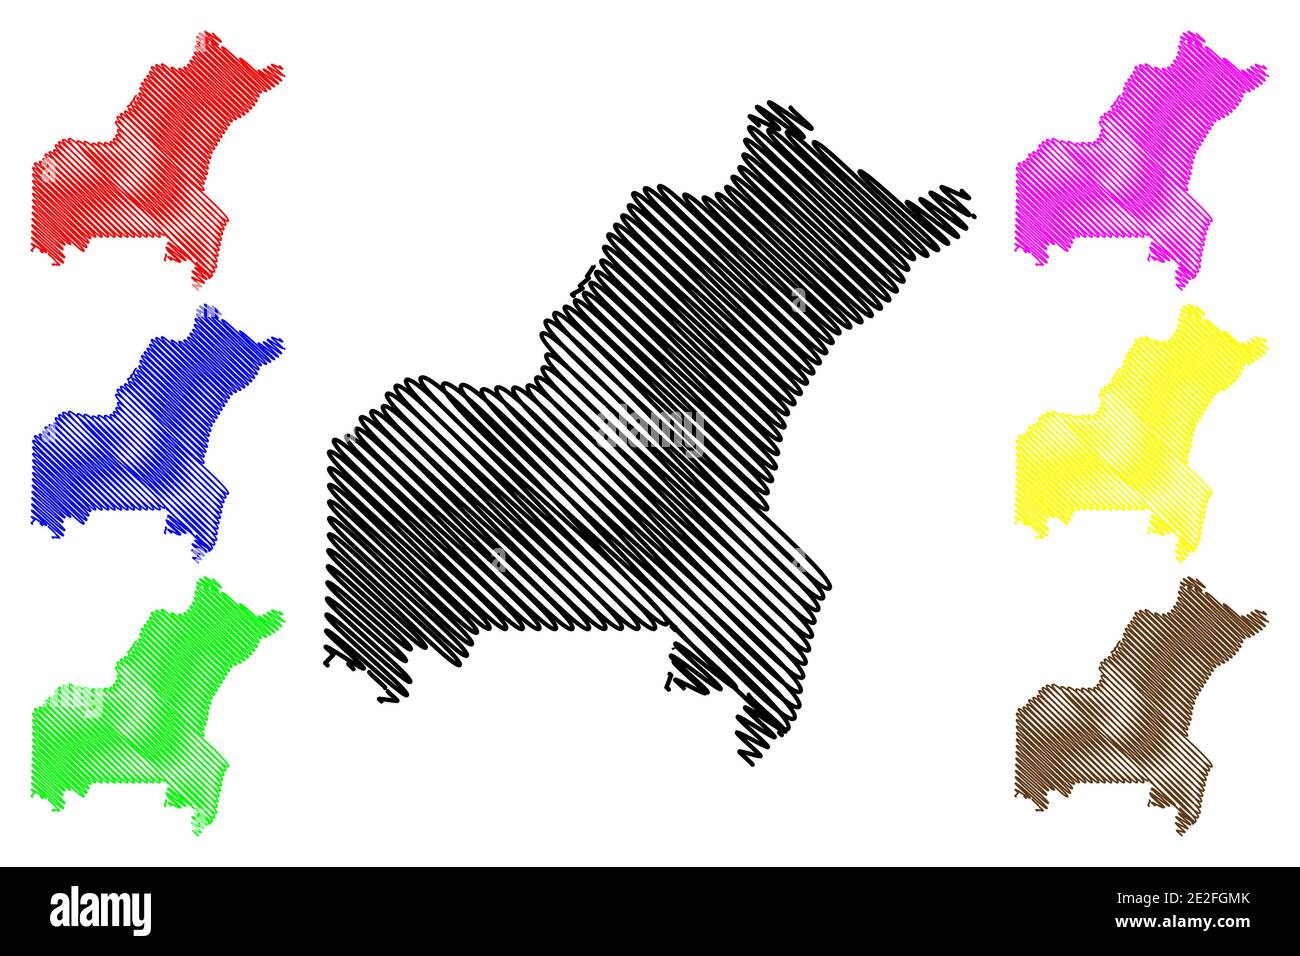 St. Louis County, Missouri (Stati Uniti, Stati Uniti d'America, Stati Uniti, Stati Uniti, Stati Uniti) mappa vettoriale illustrazione, abbozzare schizzo mappa di Saint Louis Illustrazione Vettoriale